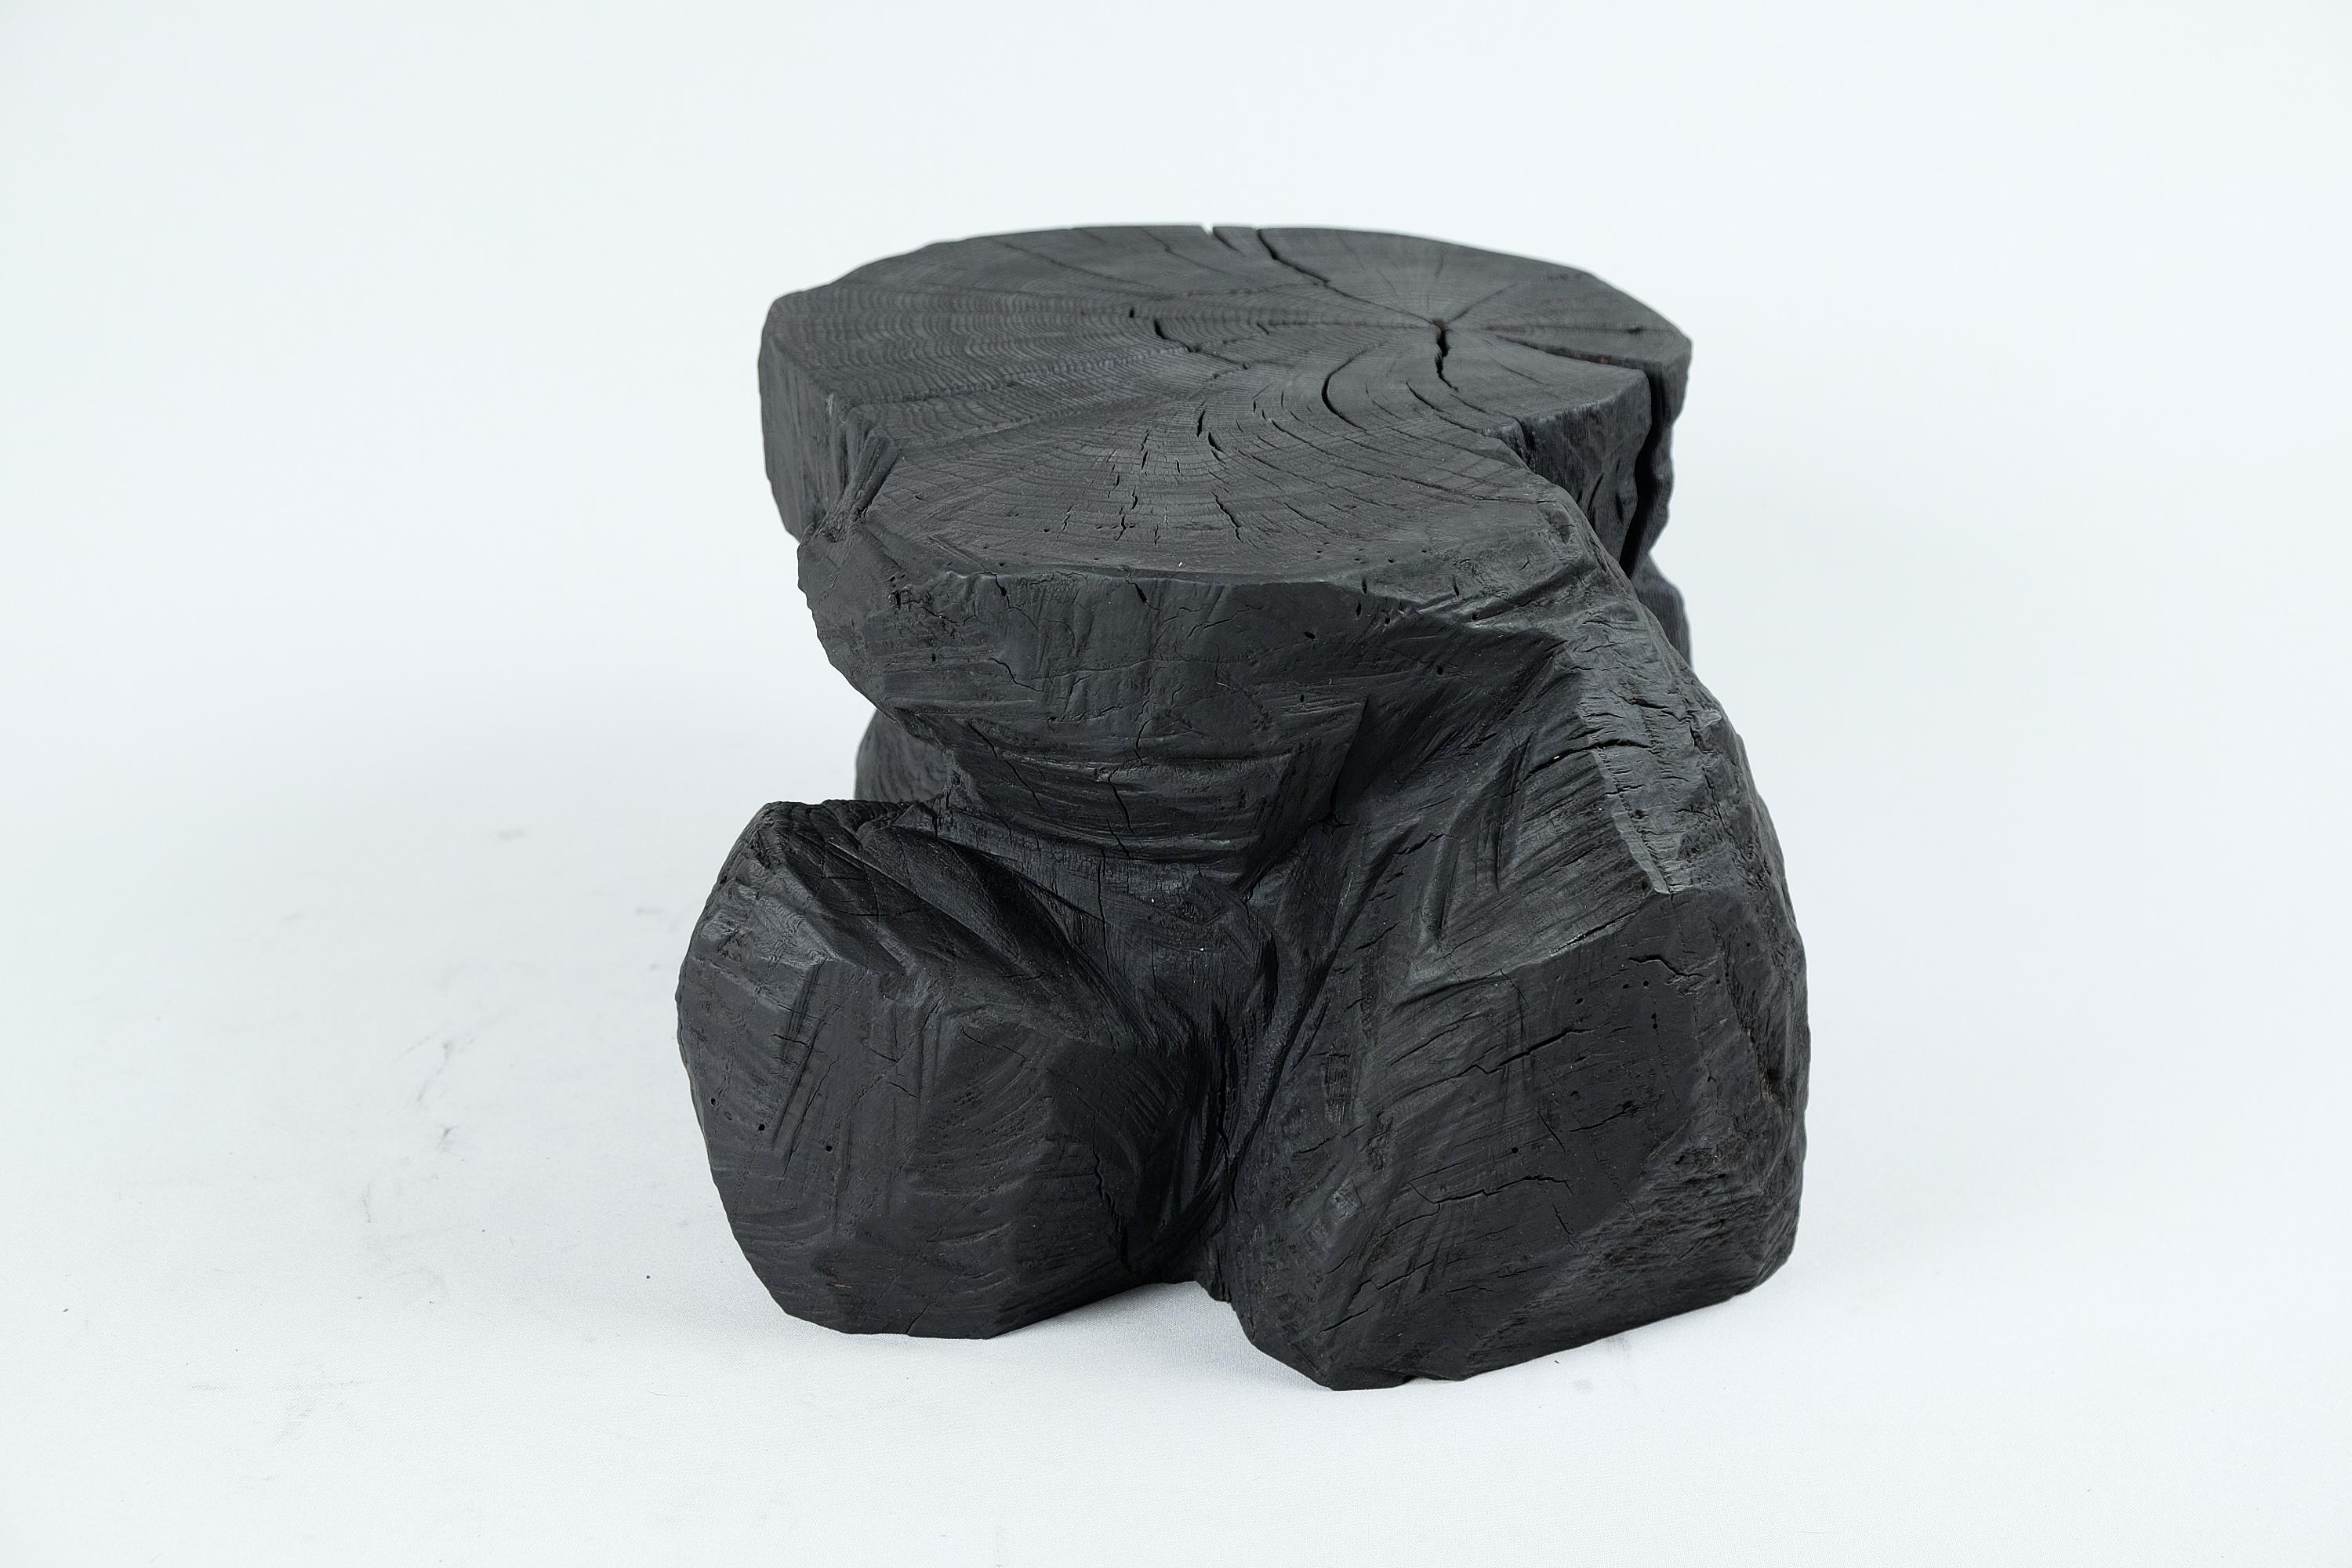 Solid Burnt Wood, Sculptural Stool/Side Table, Rock, Original Design, Logniture For Sale 2